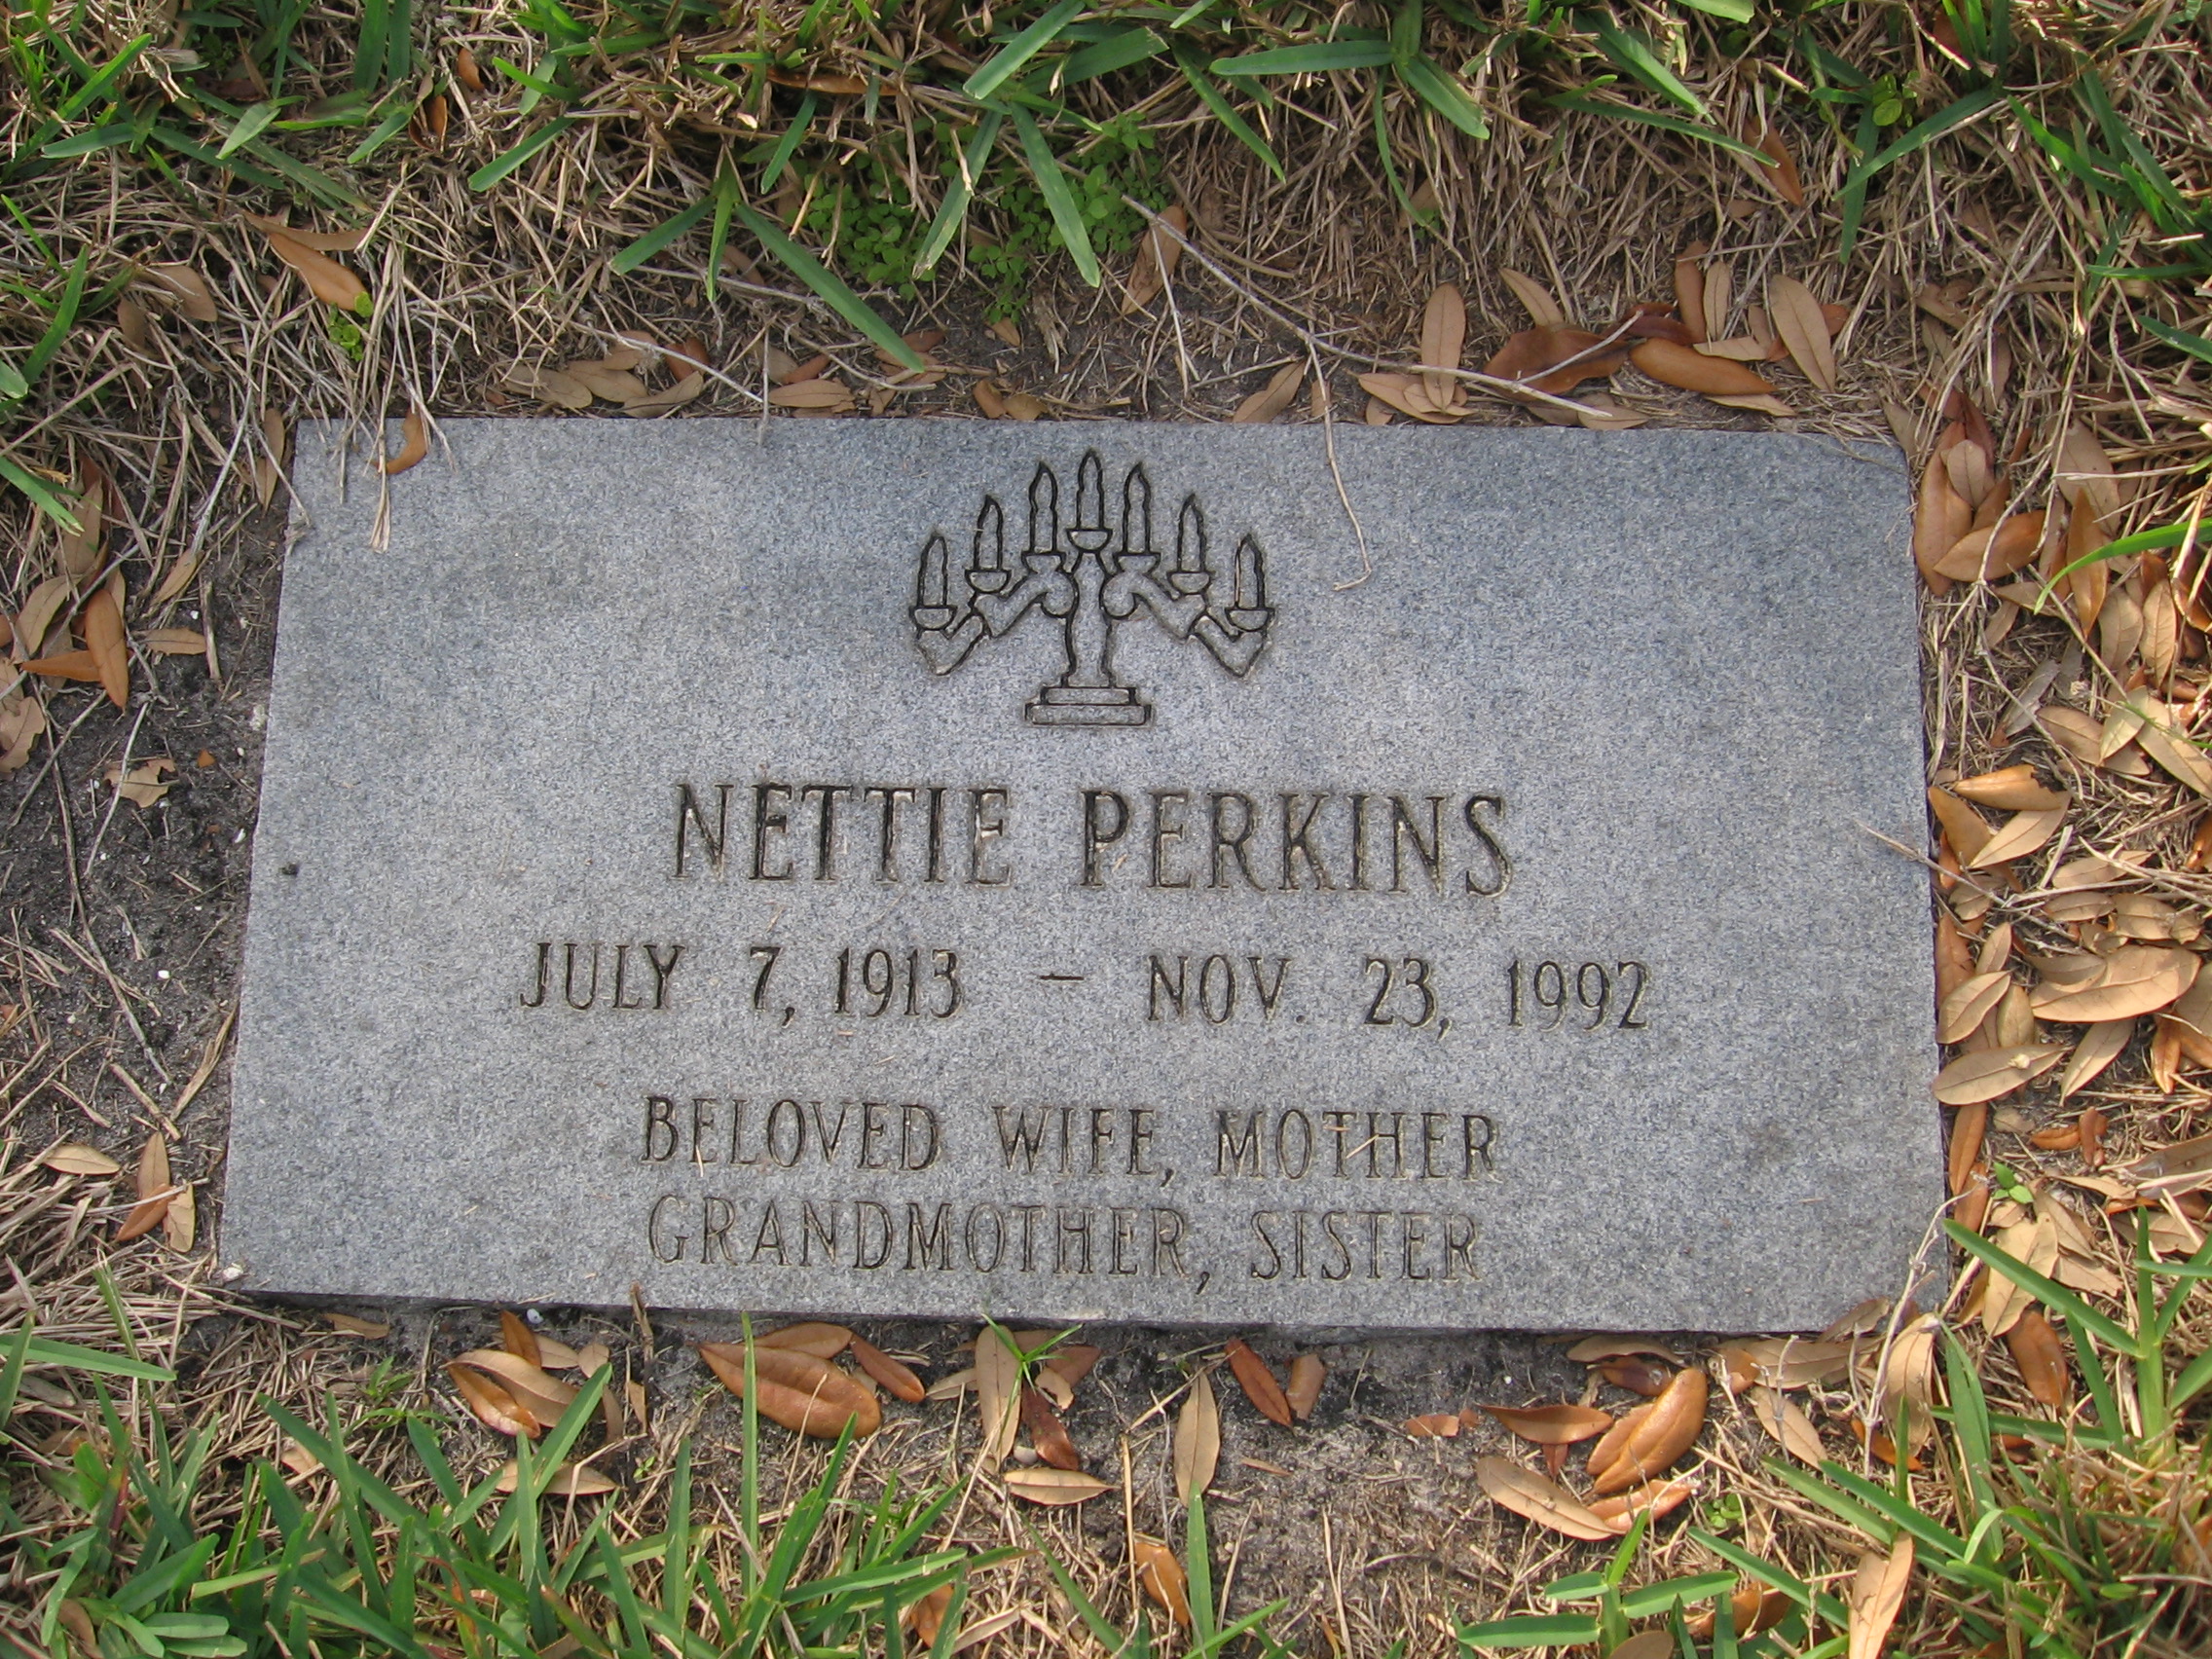 Nettie Perkins